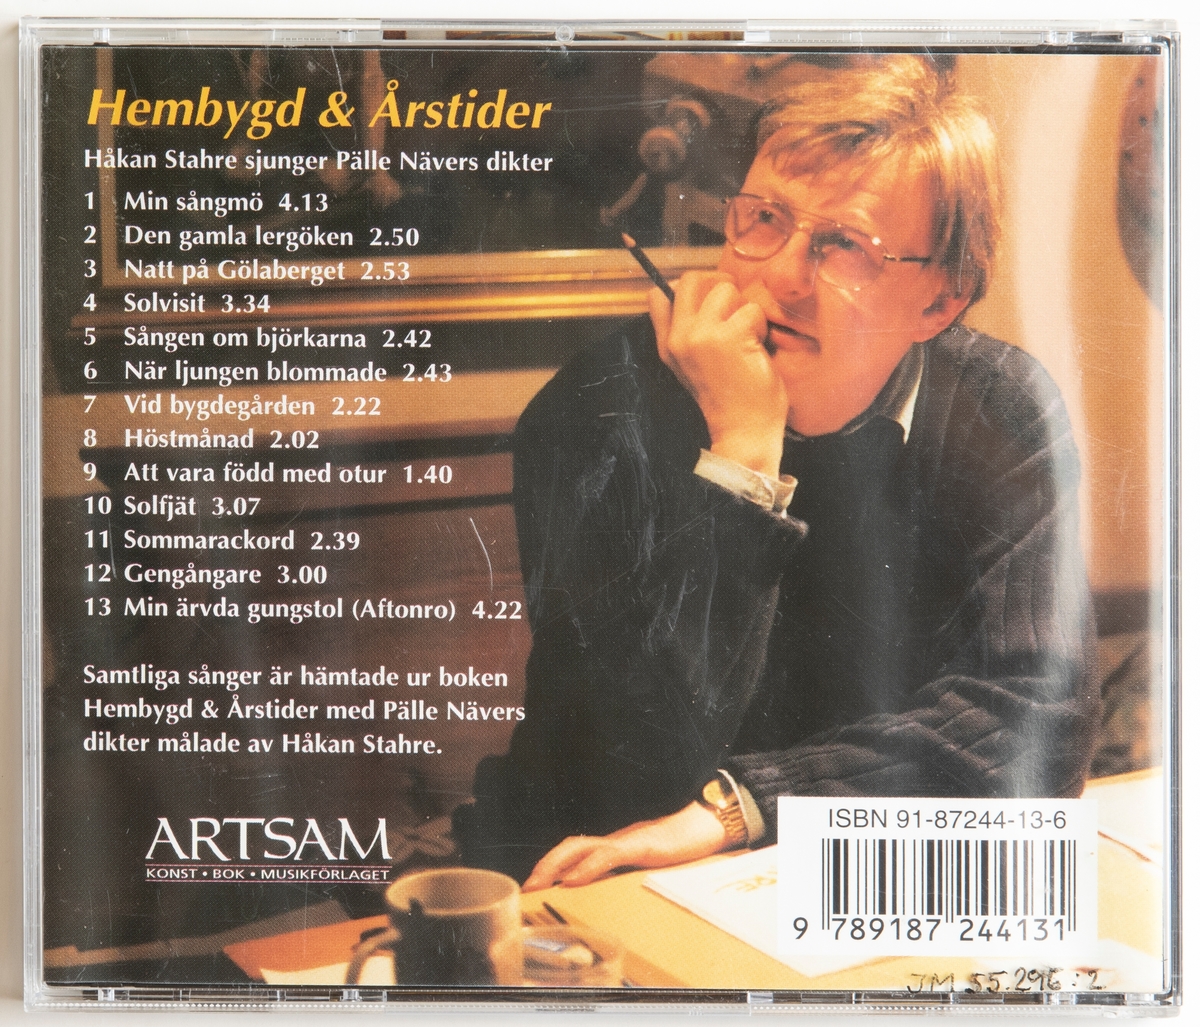 CD-skiva, "Hembygd och årstider", Håkan Stahre sjunger Pälle Nävers dikter. Skiva i tredelat, hårt plastfodral med booklet (häfte) i framsidan och inlaga i baksidan. På framsidan sitter prislapp märkt: "42 ERIKSHJÄLPEN 10.00".

Innehåll
1. Min sångmö
2. Den gamla lergöken
3. Natt på Gölaberget
4. Solvisit
5. Sången om björkarna
6. När ljungen blommade
7. Vid bygdegården
8. Höstmånad
9. Att vara född med otur
10. Solfjät
11. Sommarackord
12. Gengångare
13. Min ärvda gungstol (Sftonro)

JM 55295:1, Skiva
JM 55295:2, Fodral
JM 55295:3, Inlaga